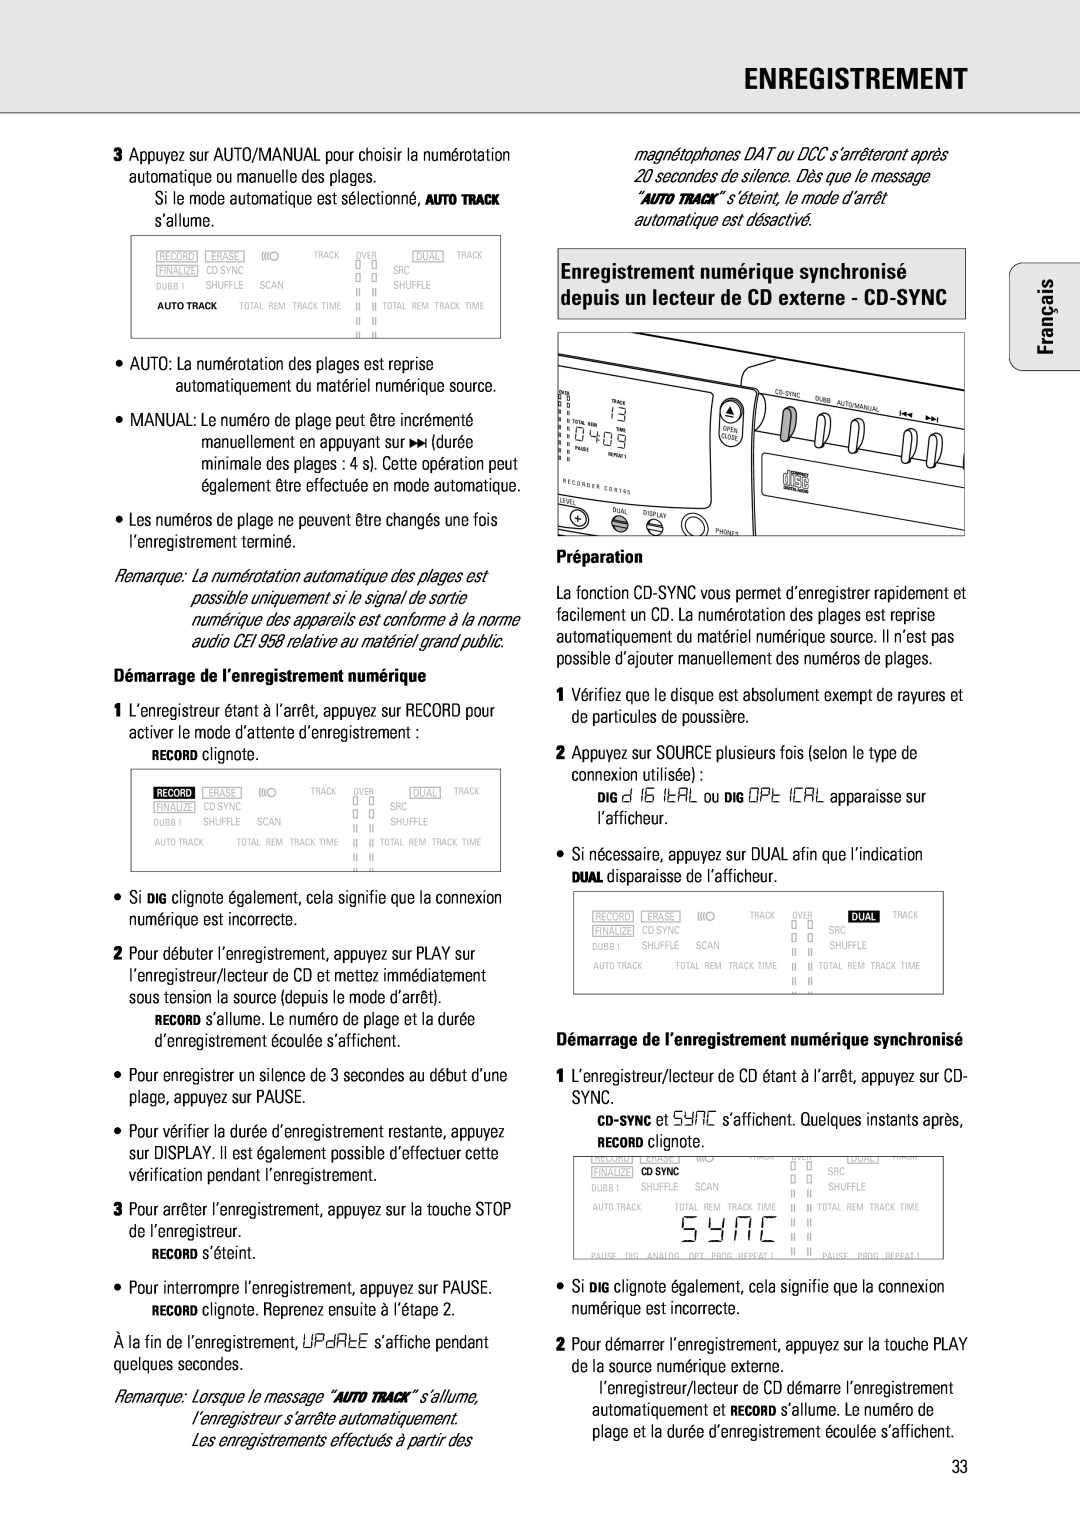 Philips 765 manual Démarrage de l’enregistrement numérique, Préparation, Enregistrement, Français 